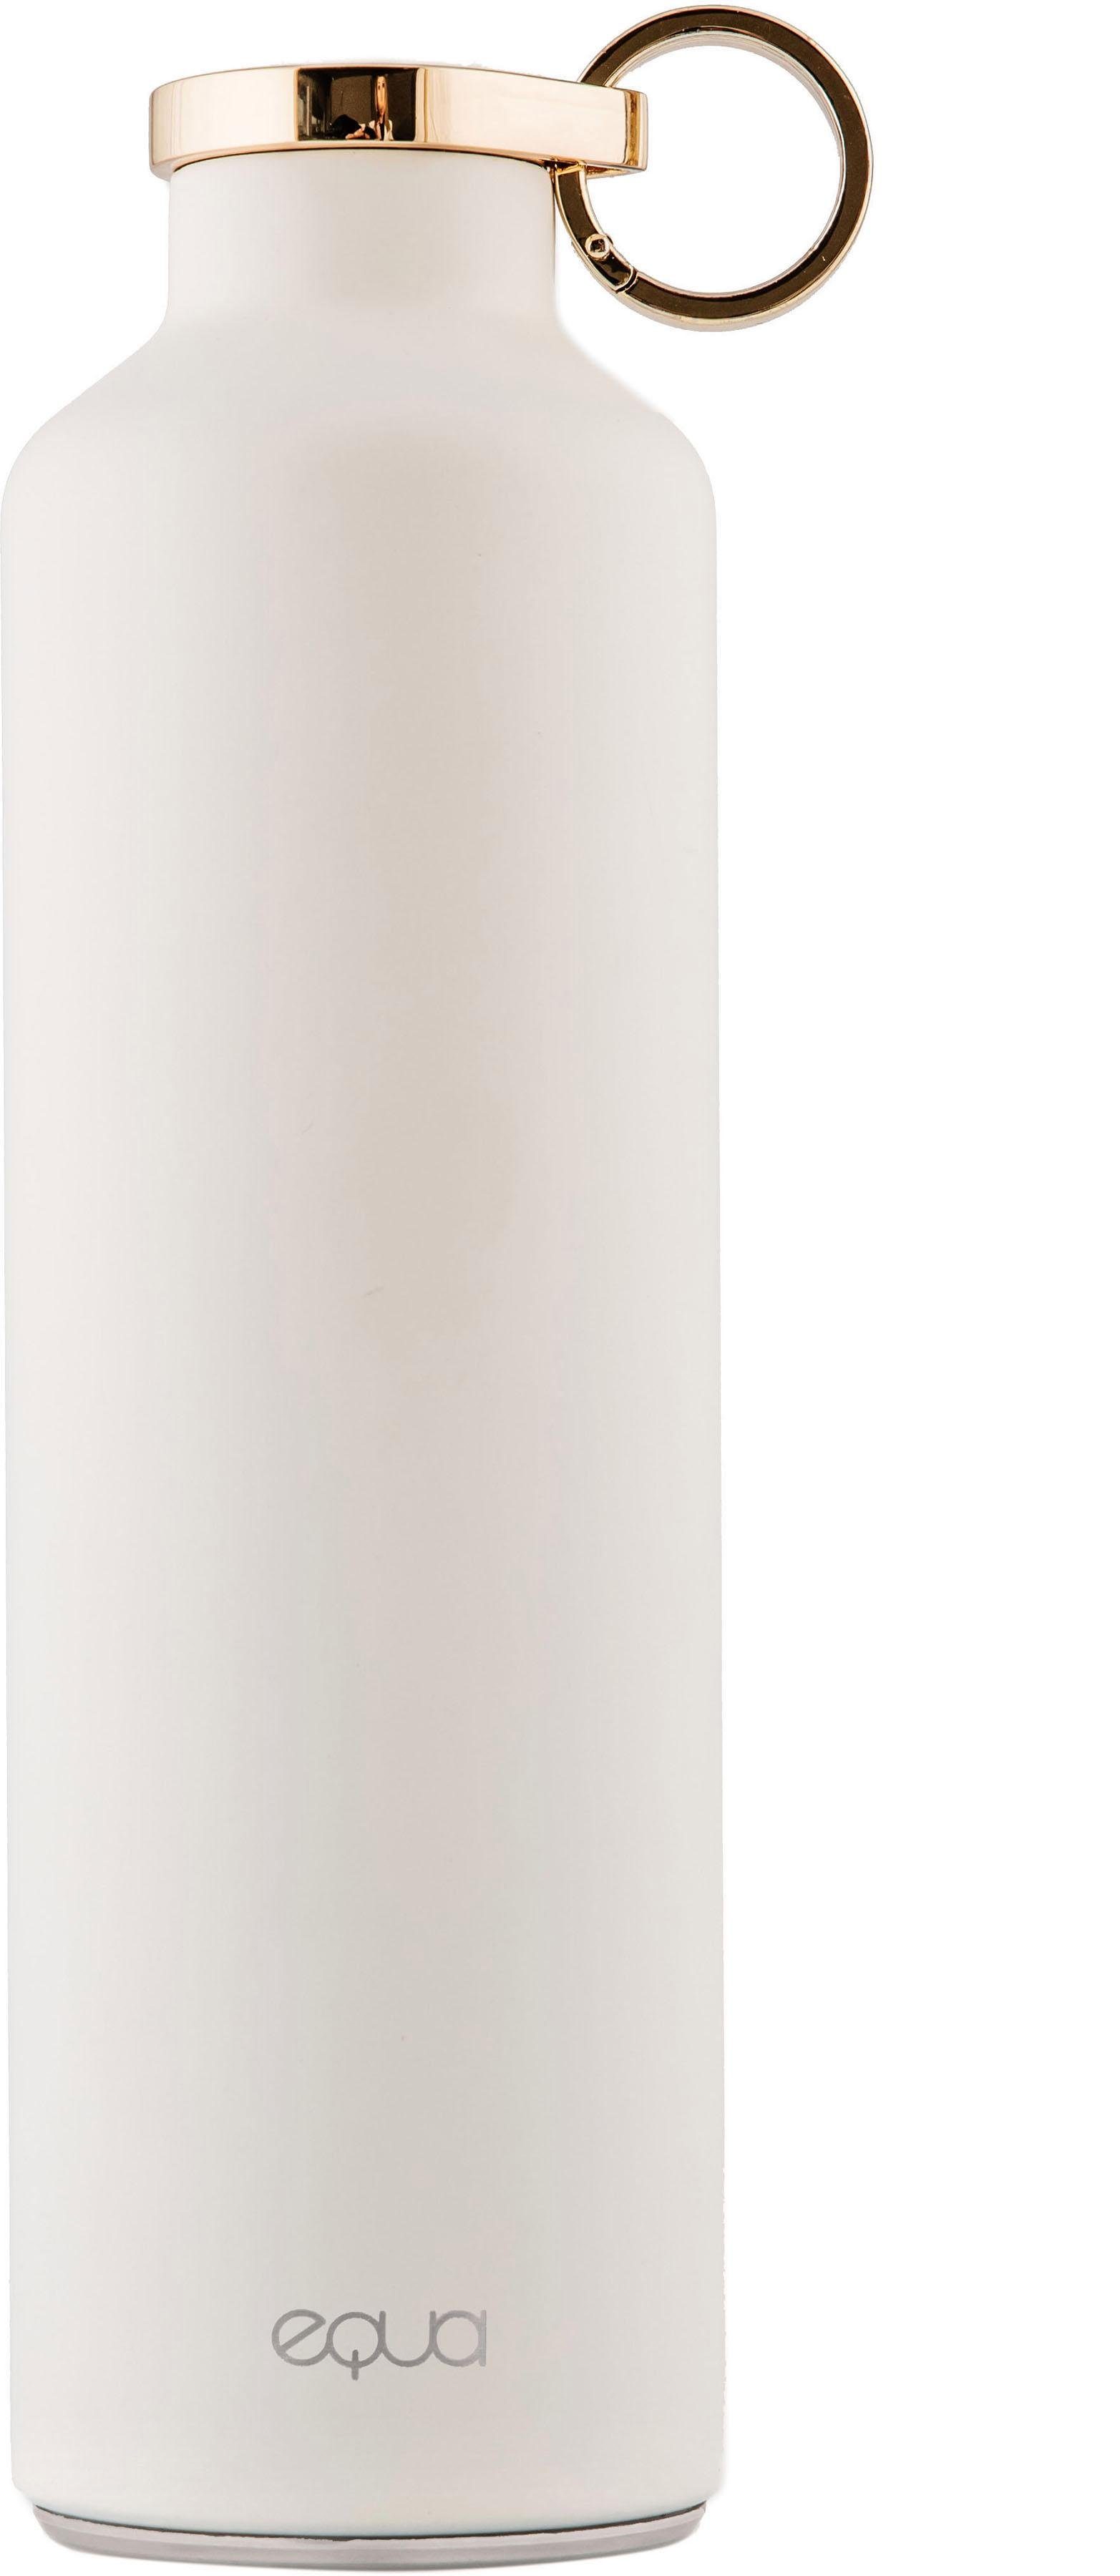 equa Isolierflasche Basic, doppelwandiger Edelstahl, 680 ml weiß | Isolierflaschen